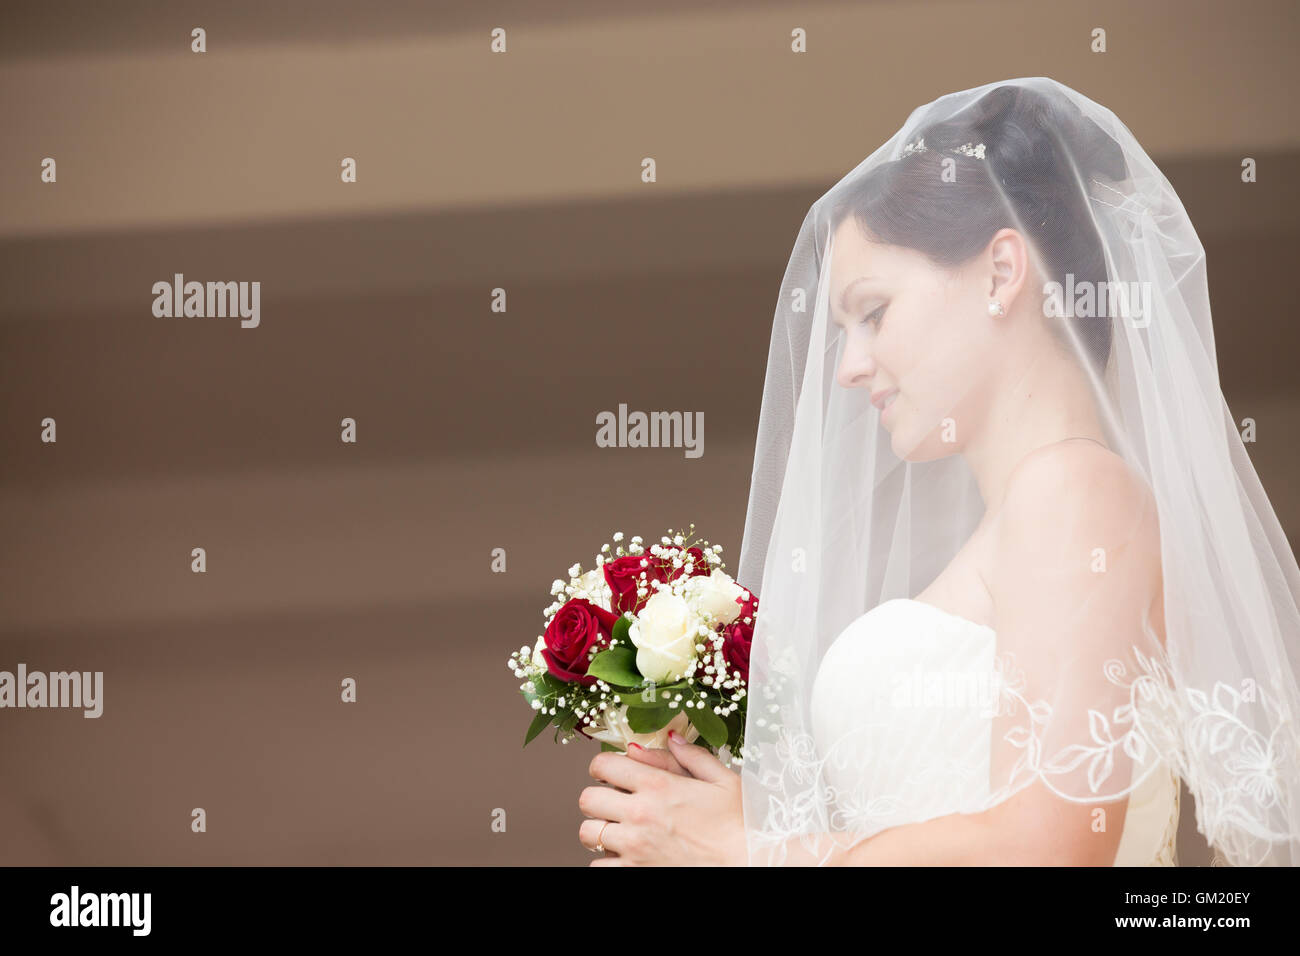 Seite Ansicht Porträt der jungen schönen Braut posiert mit ihren Augen nach unten, halten Brautstrauß mit weißen und roten Rosen Stockfoto